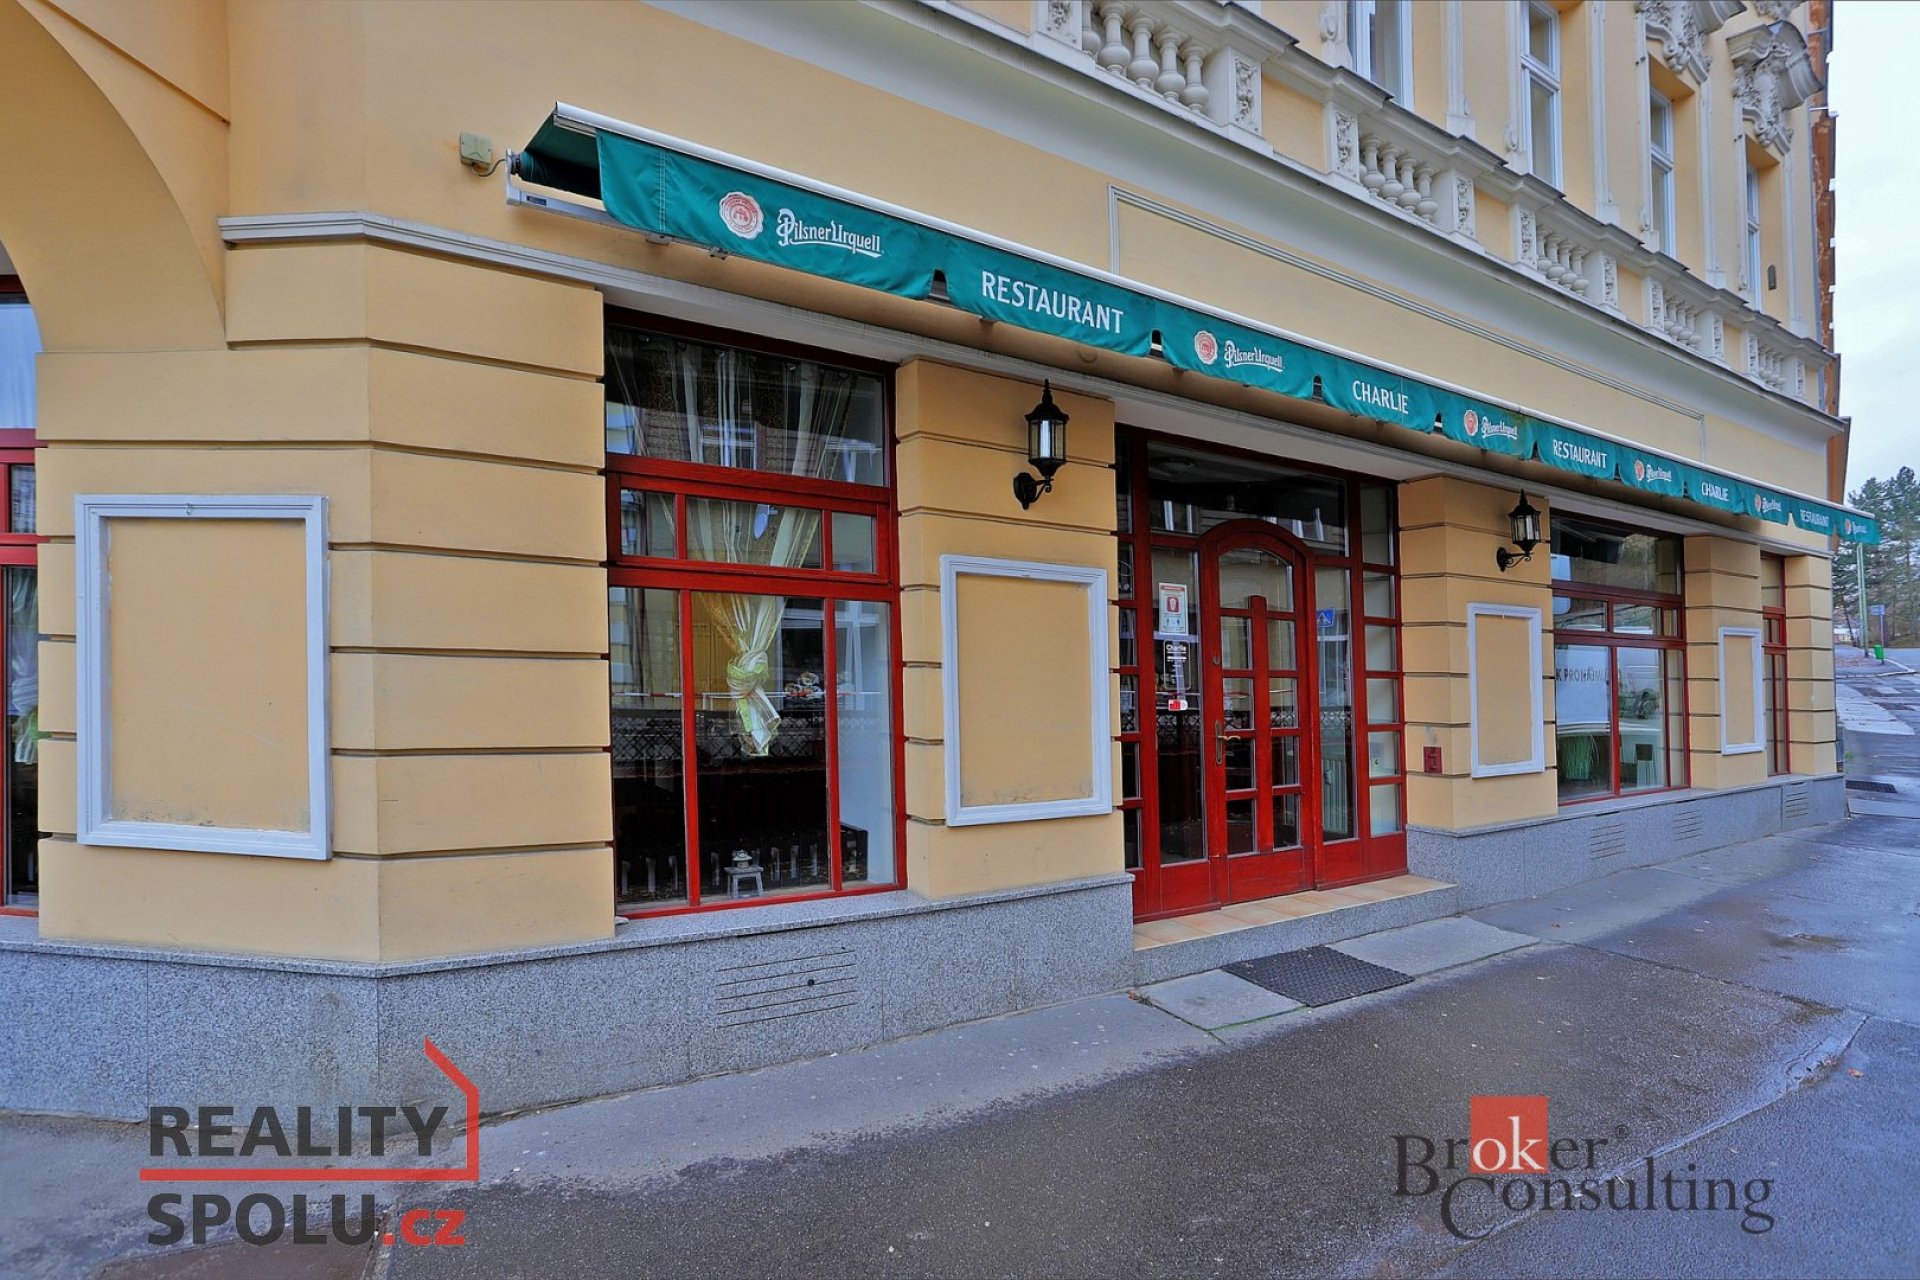 Prodej, komerční/restaurace, 180 m2, I. P. Pavlova 919/17, 36001 Karlovy Vary, Karlovy Vary [ID 3894